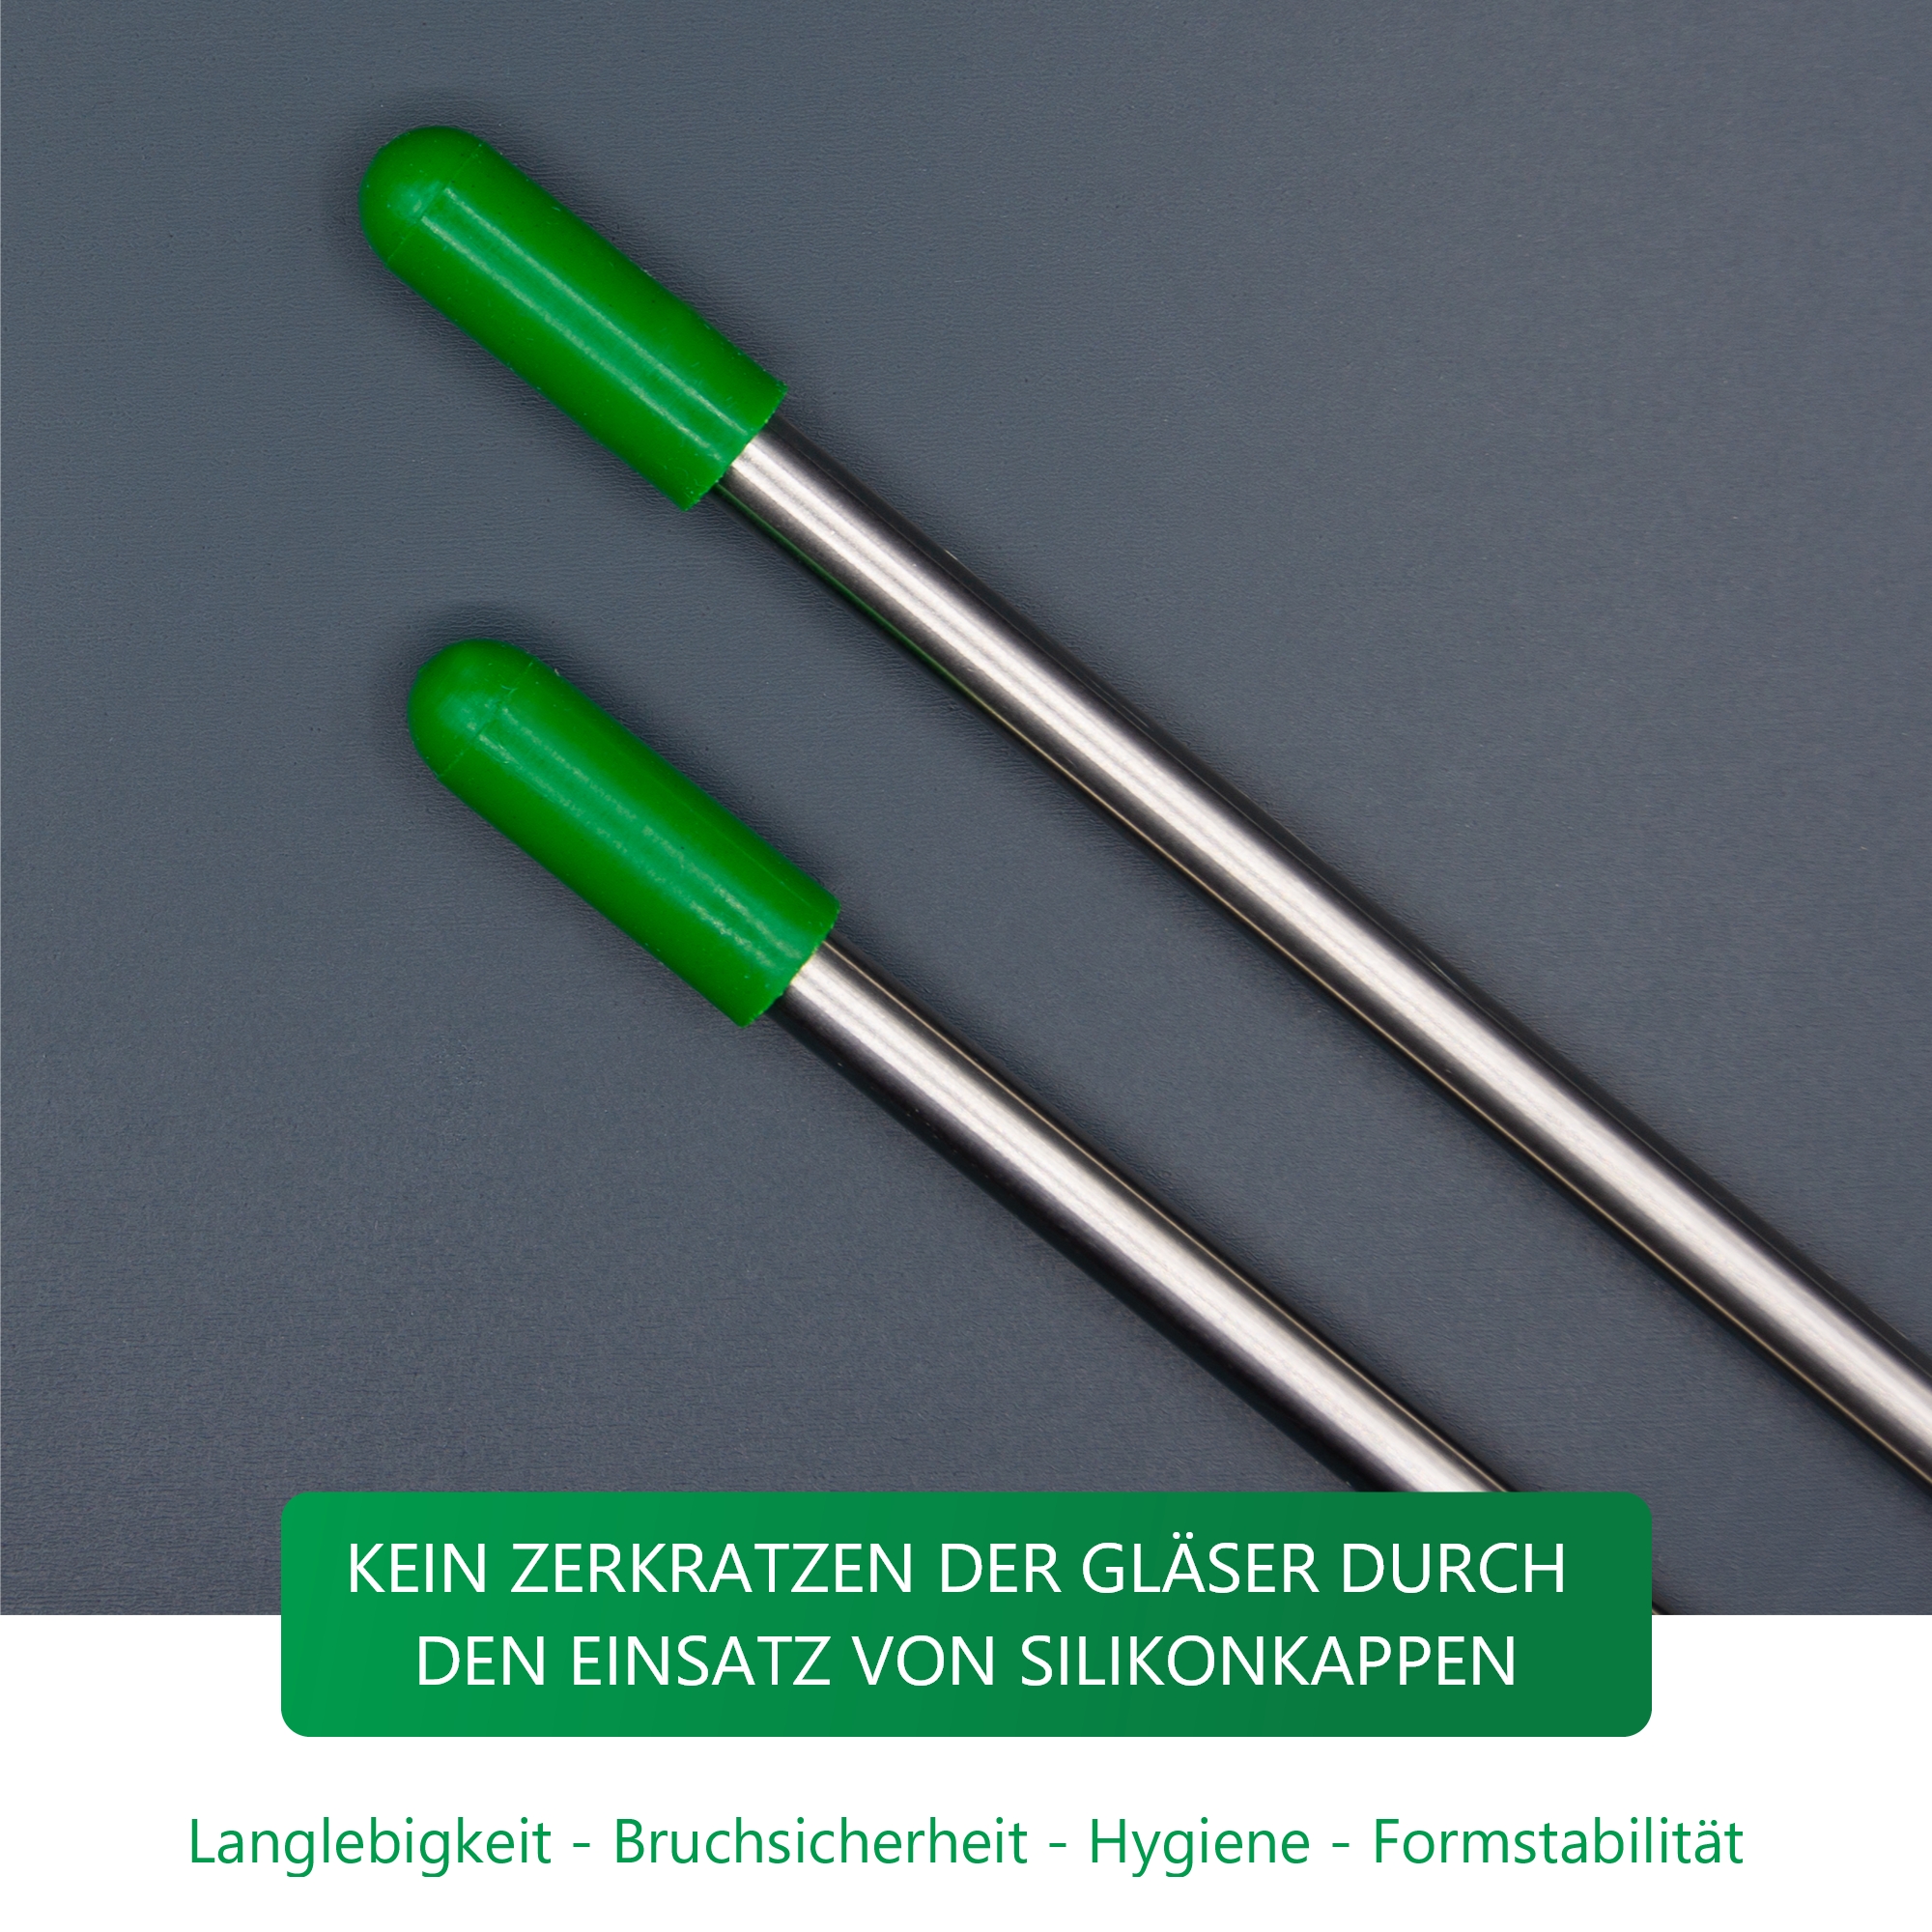 Edelstahl Glashalter für Geschirrspüler mit grünen Kappen - Set Allrounder